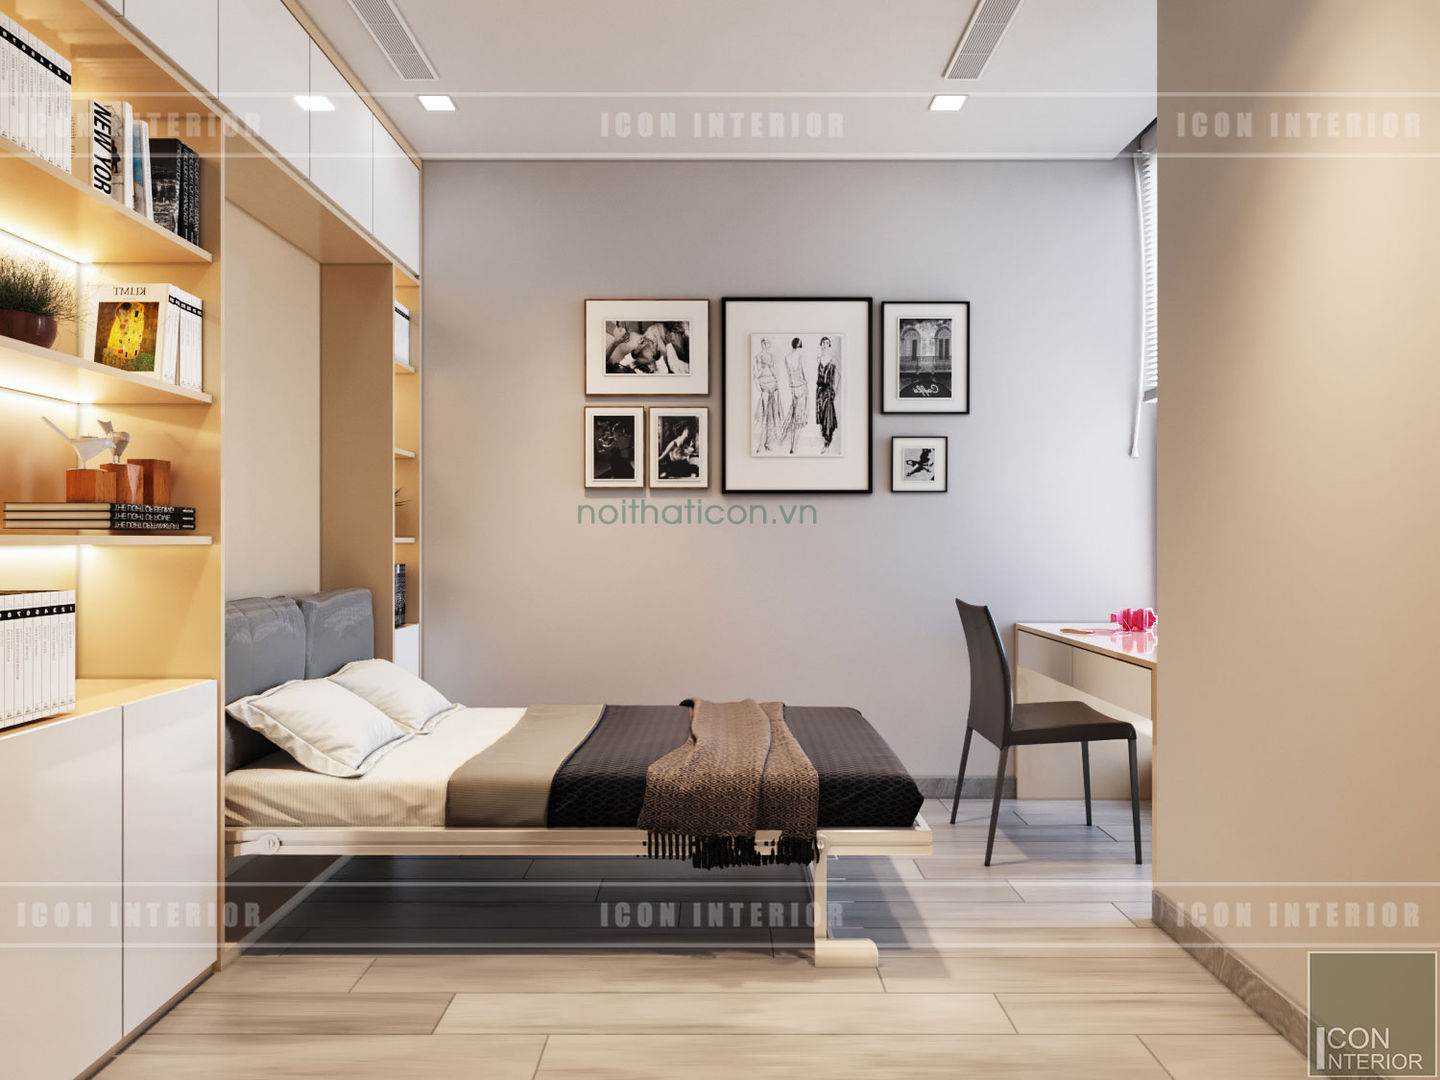 Thiết kế nội thất phong cách hiện đại thanh lịch và thân thiện, ICON INTERIOR ICON INTERIOR 臥室